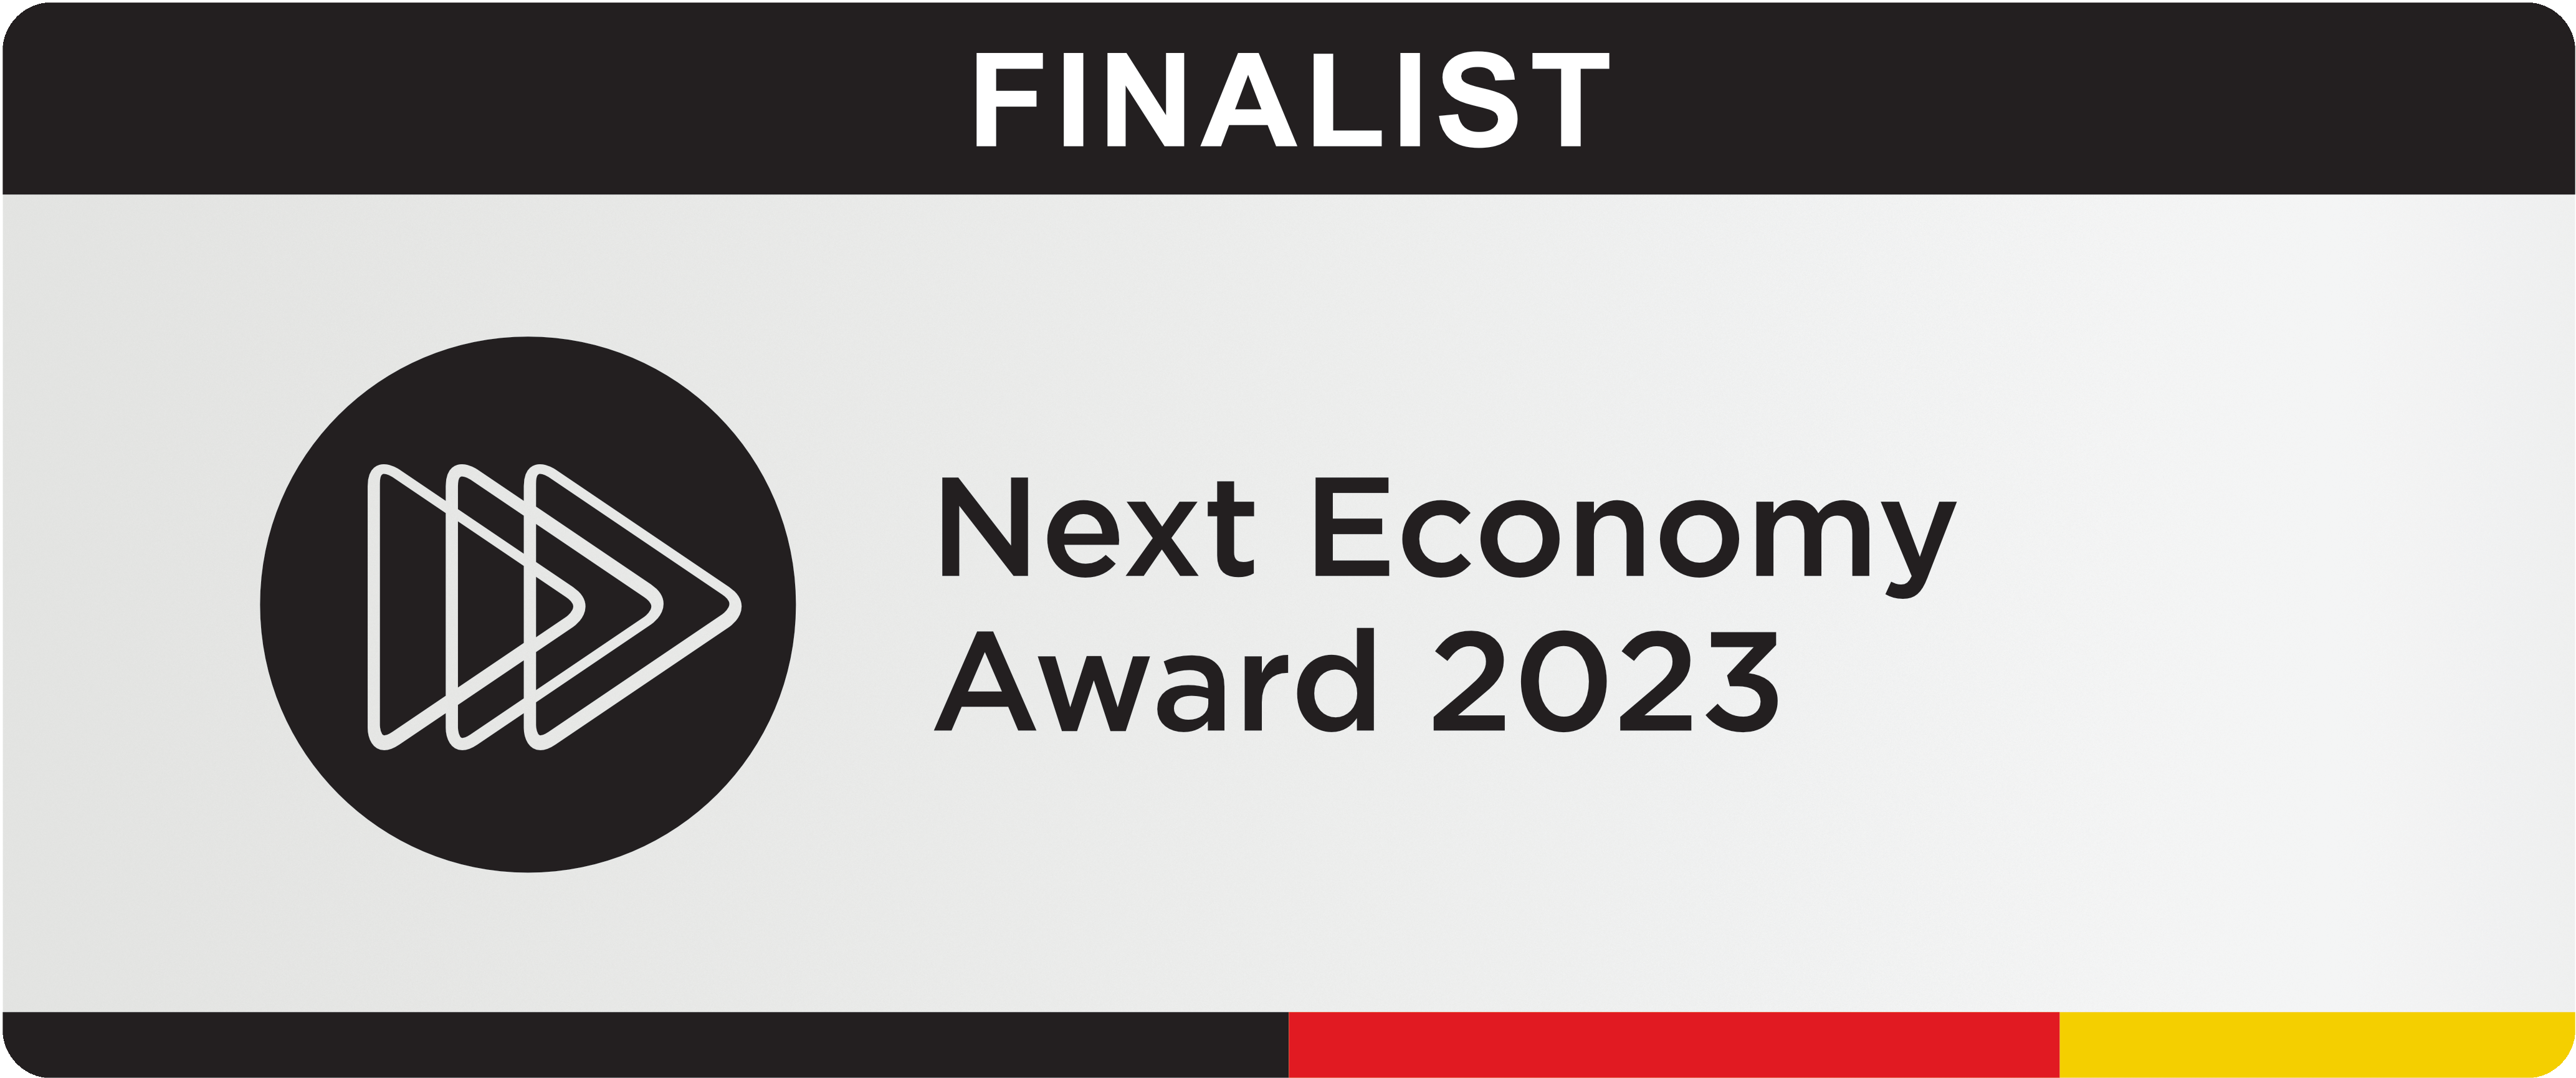 Next Economy Award Logo Finalist 2023